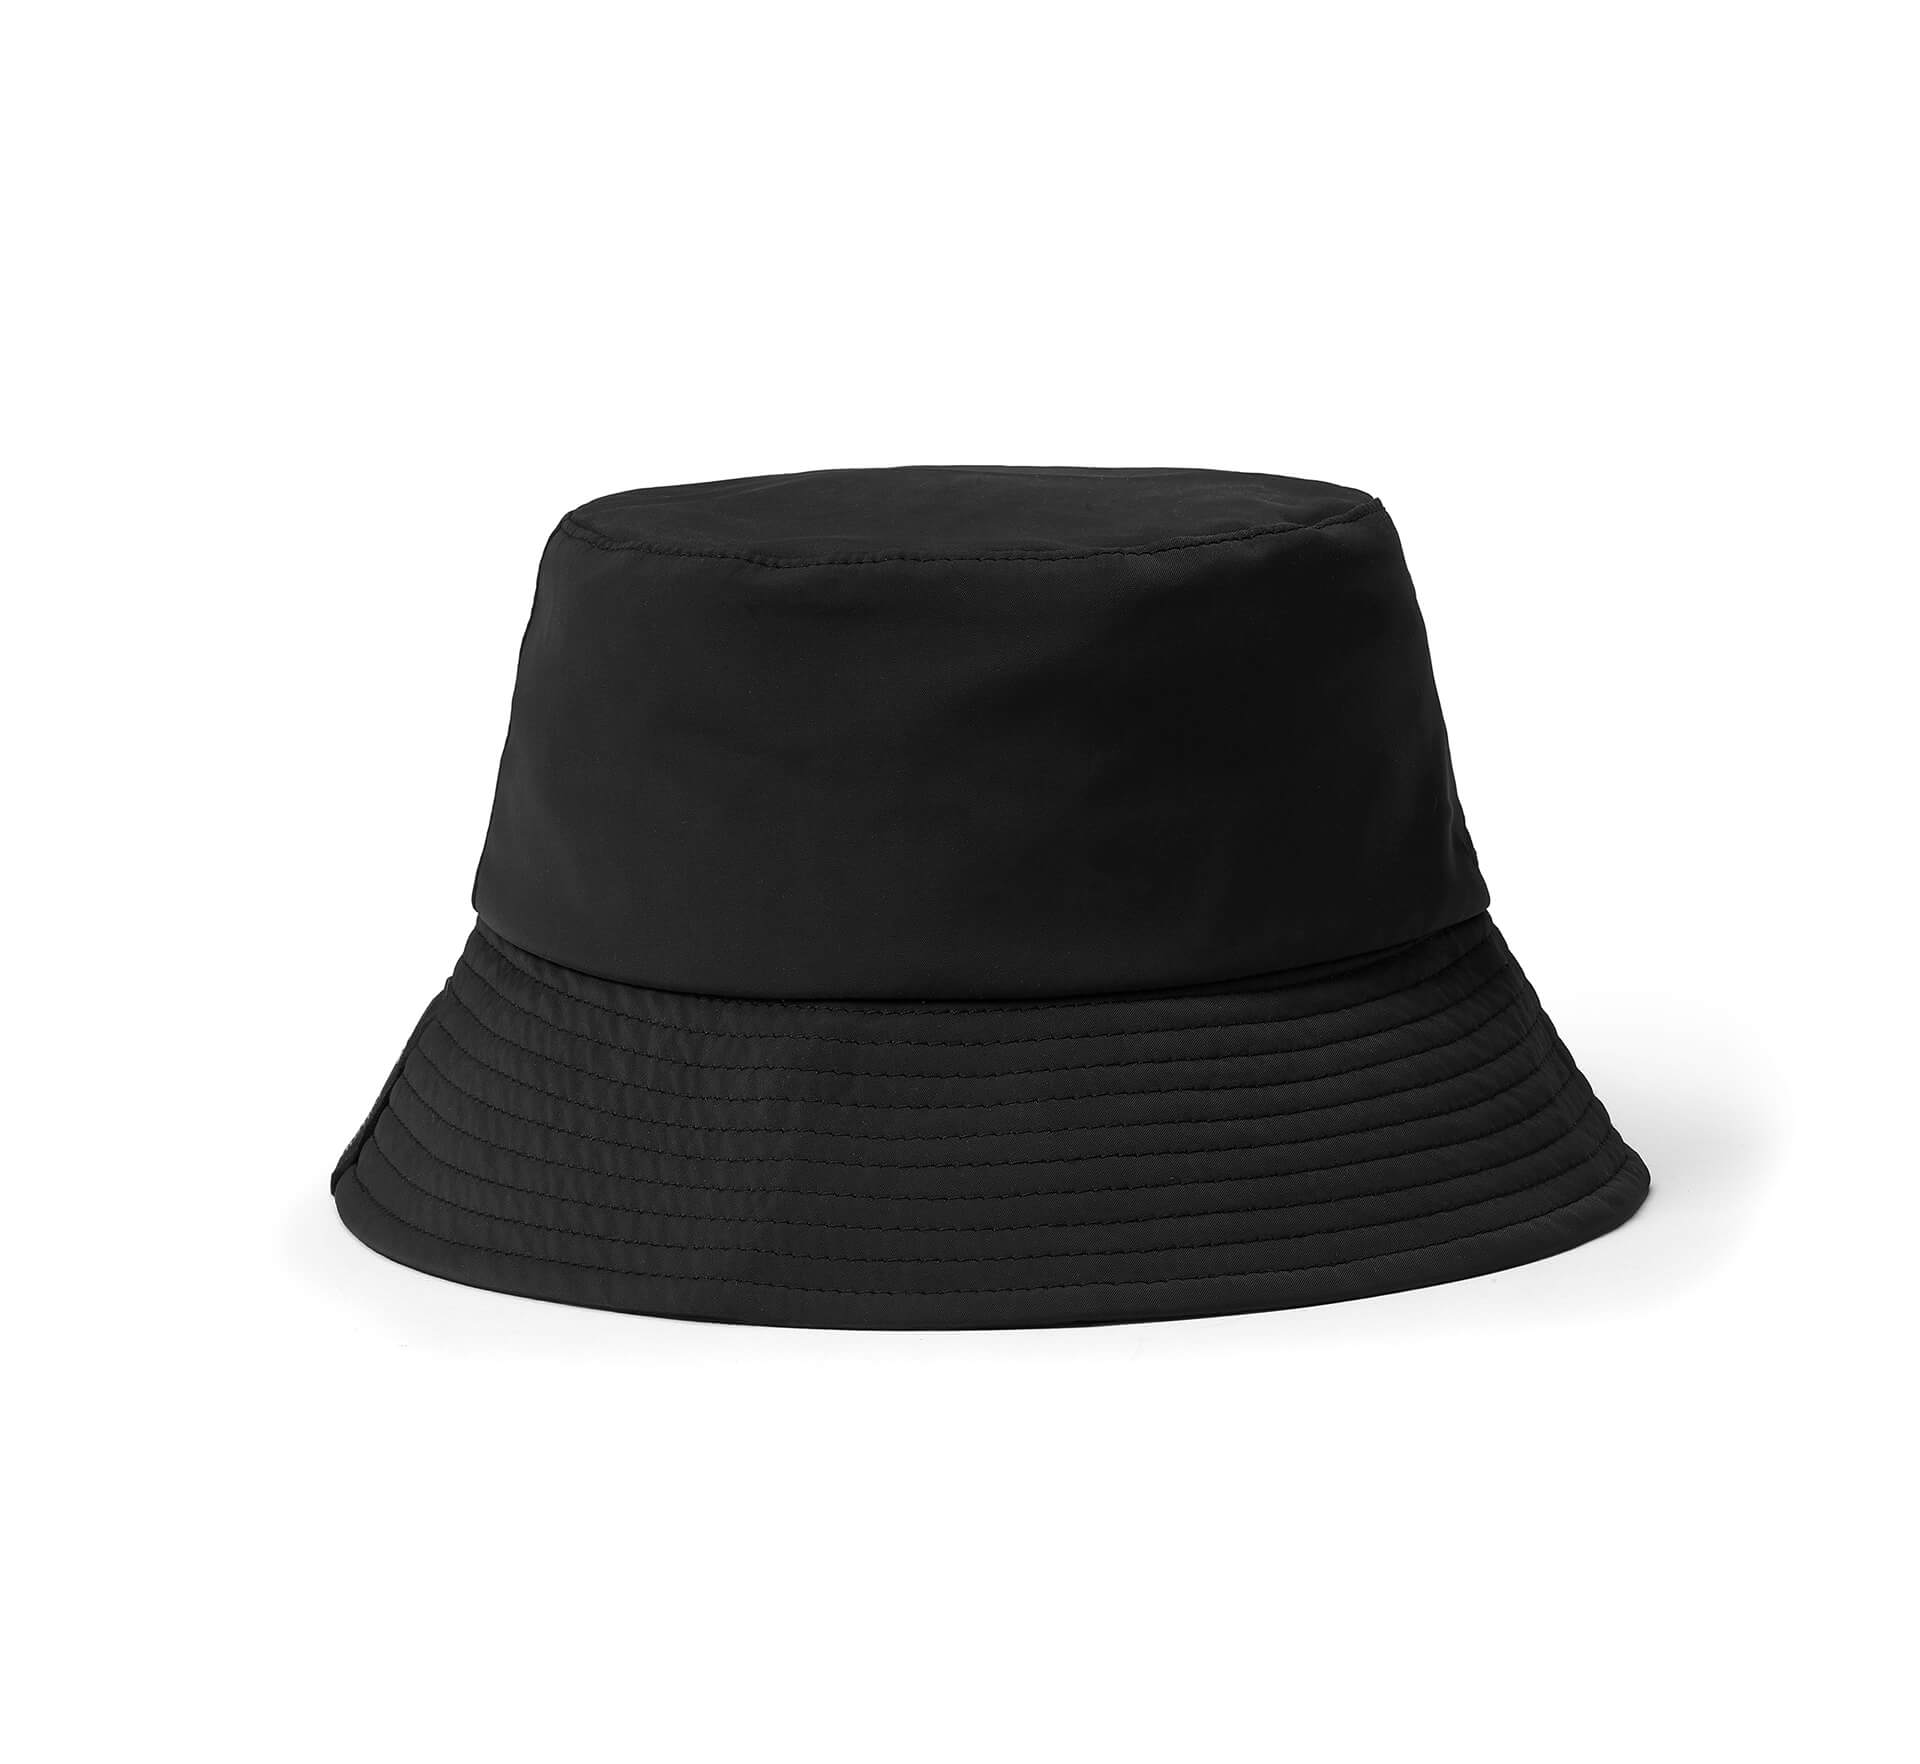 ROG Slash Bucket Hat